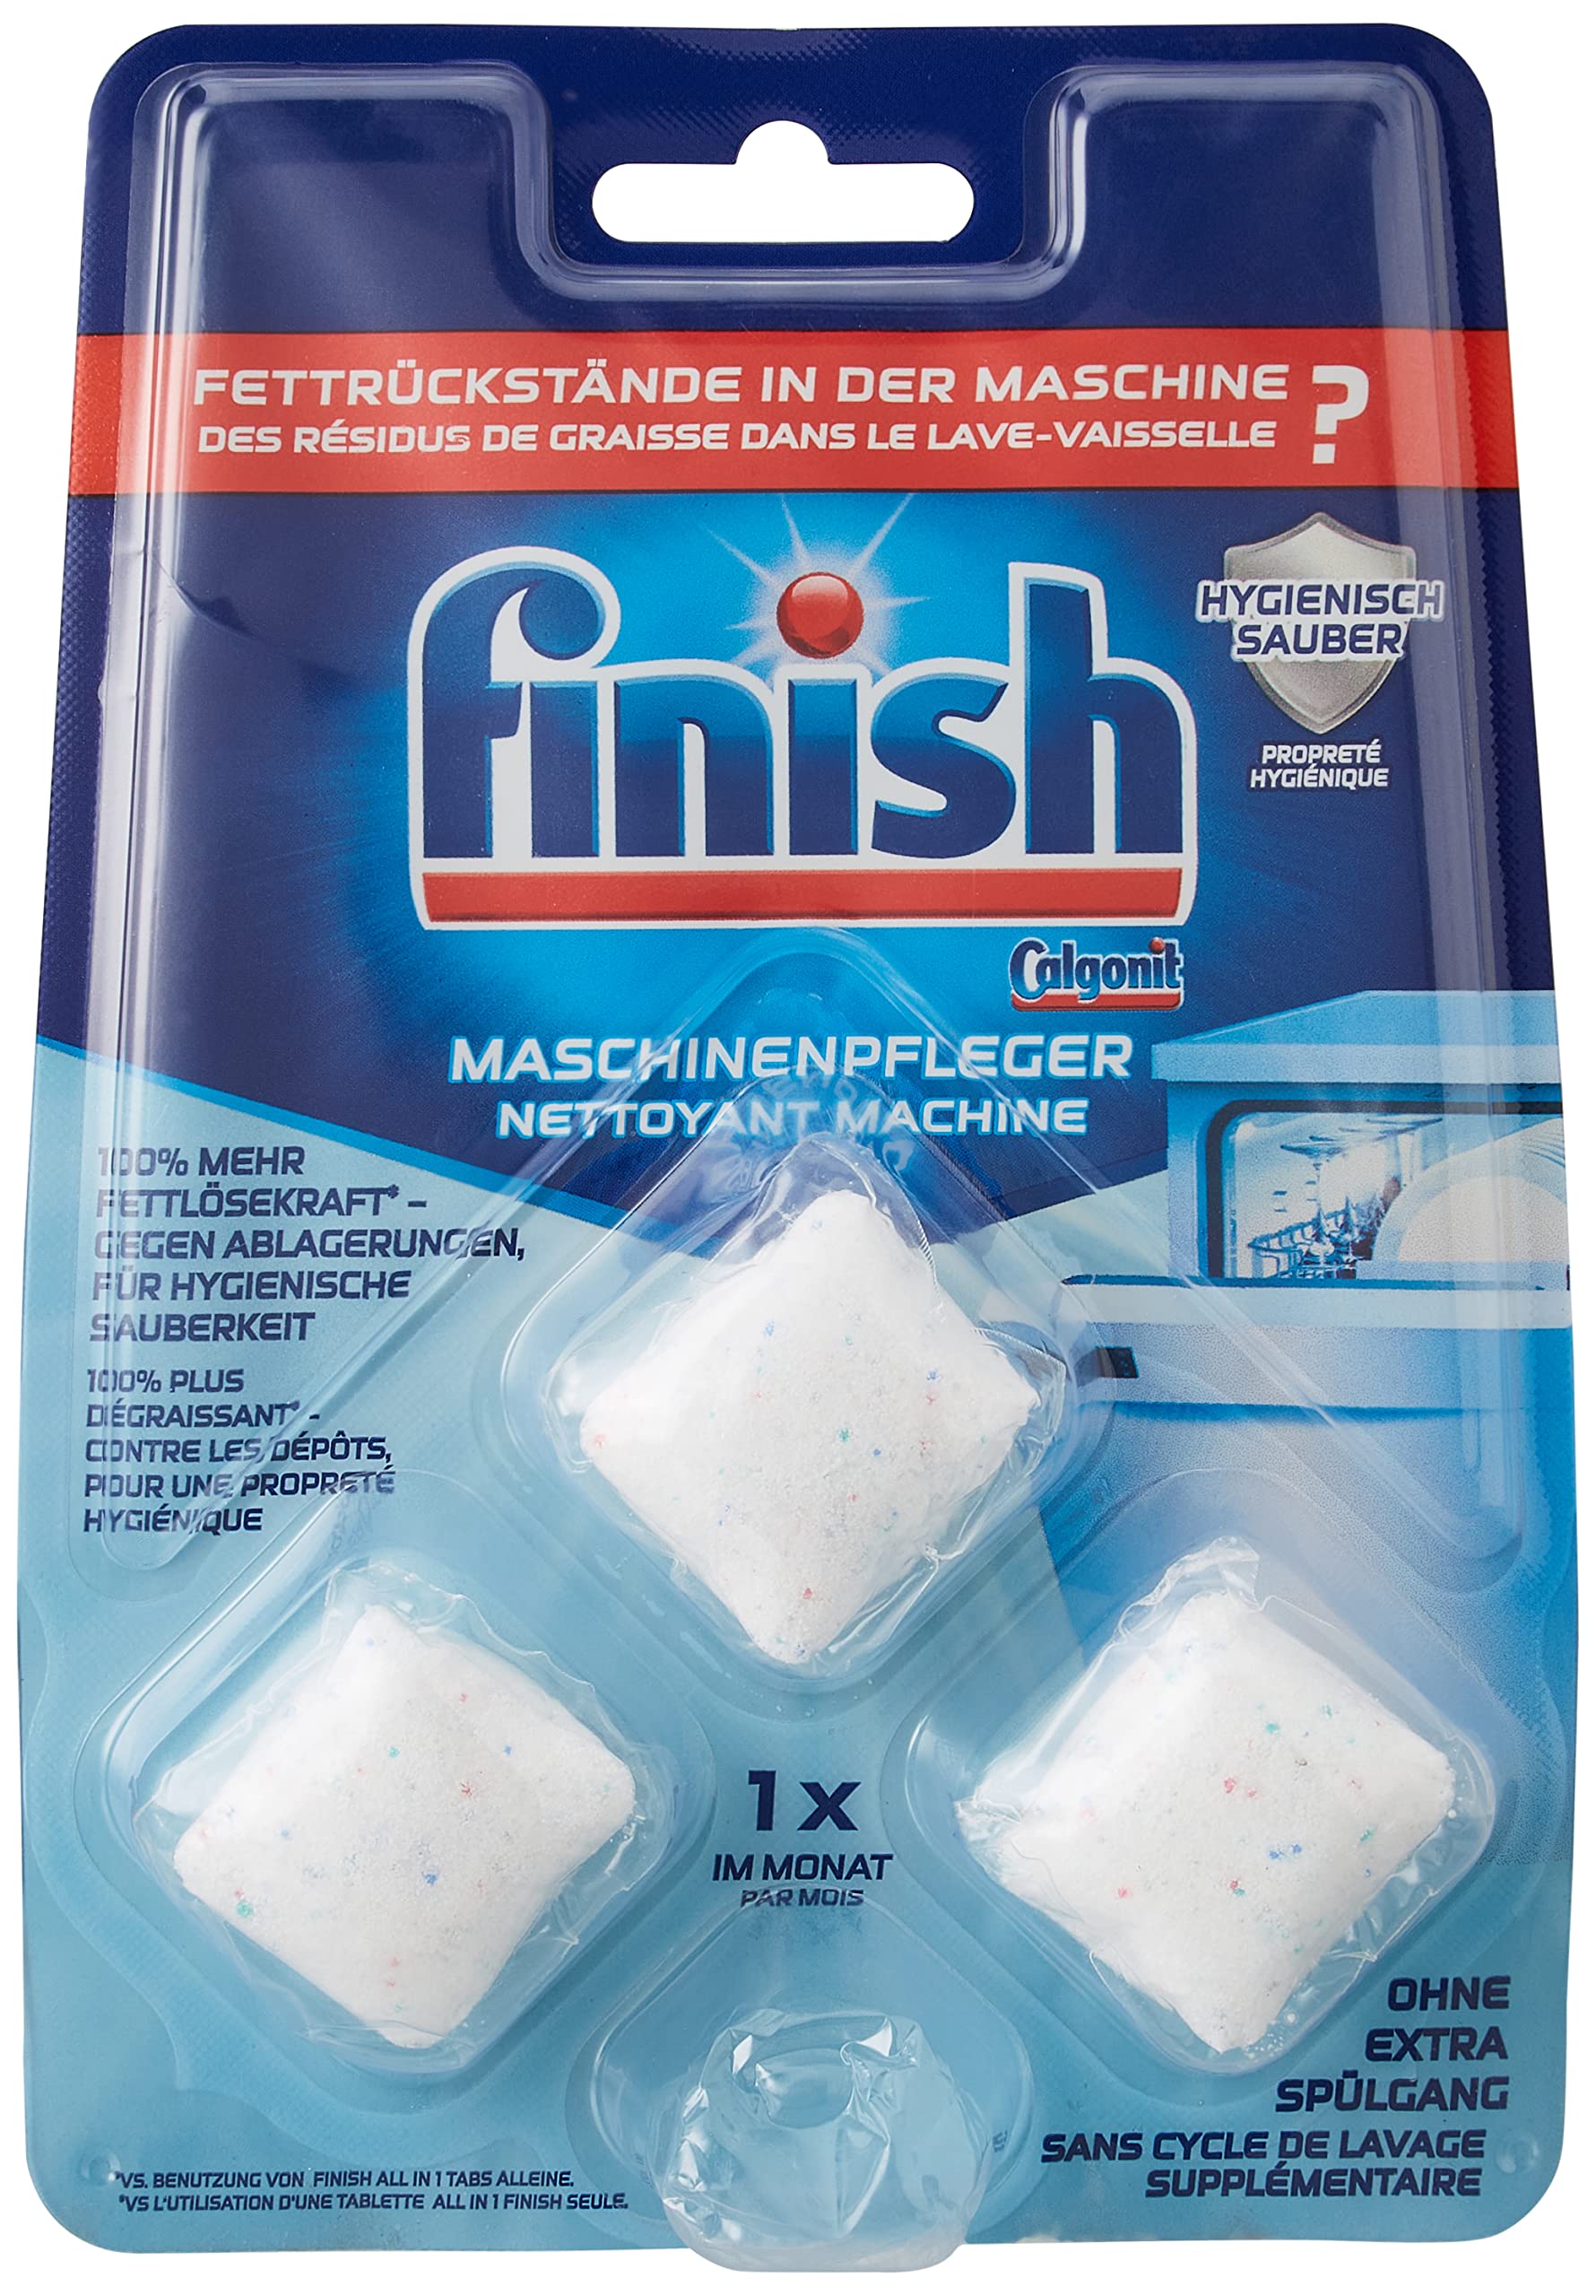 soldes Finish Lingettes de nettoyage - Tablettes pour lave-vaisselle contre la saleté et la graisse à l´intérieur du lave-vaisselle - 1 x 3 tablettes de nettoyage pour lave-vaisselle asXIIV996 en solde